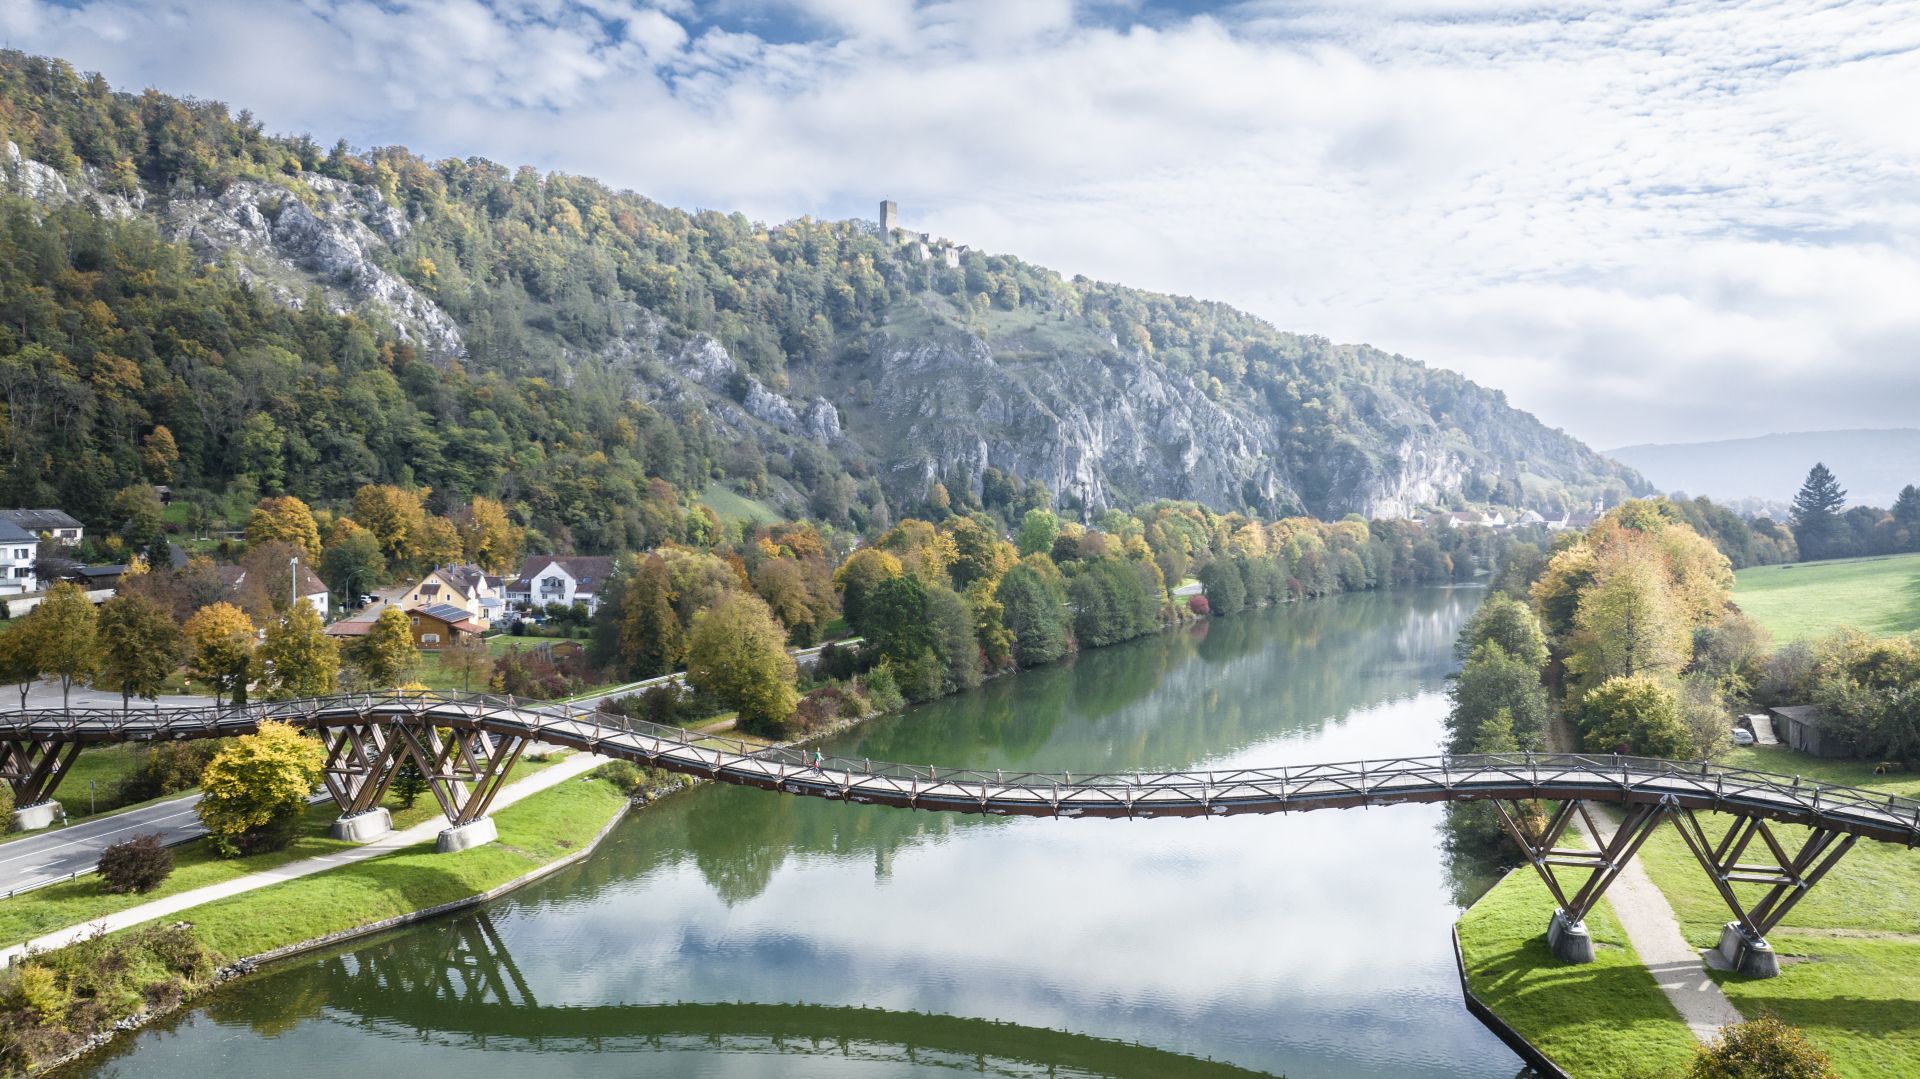 Blick von oben auf die geschwungene Holzbrücke Tatzlwurm, den Main-Donau-Kanal und die grünen Hänge des Altmühltals.